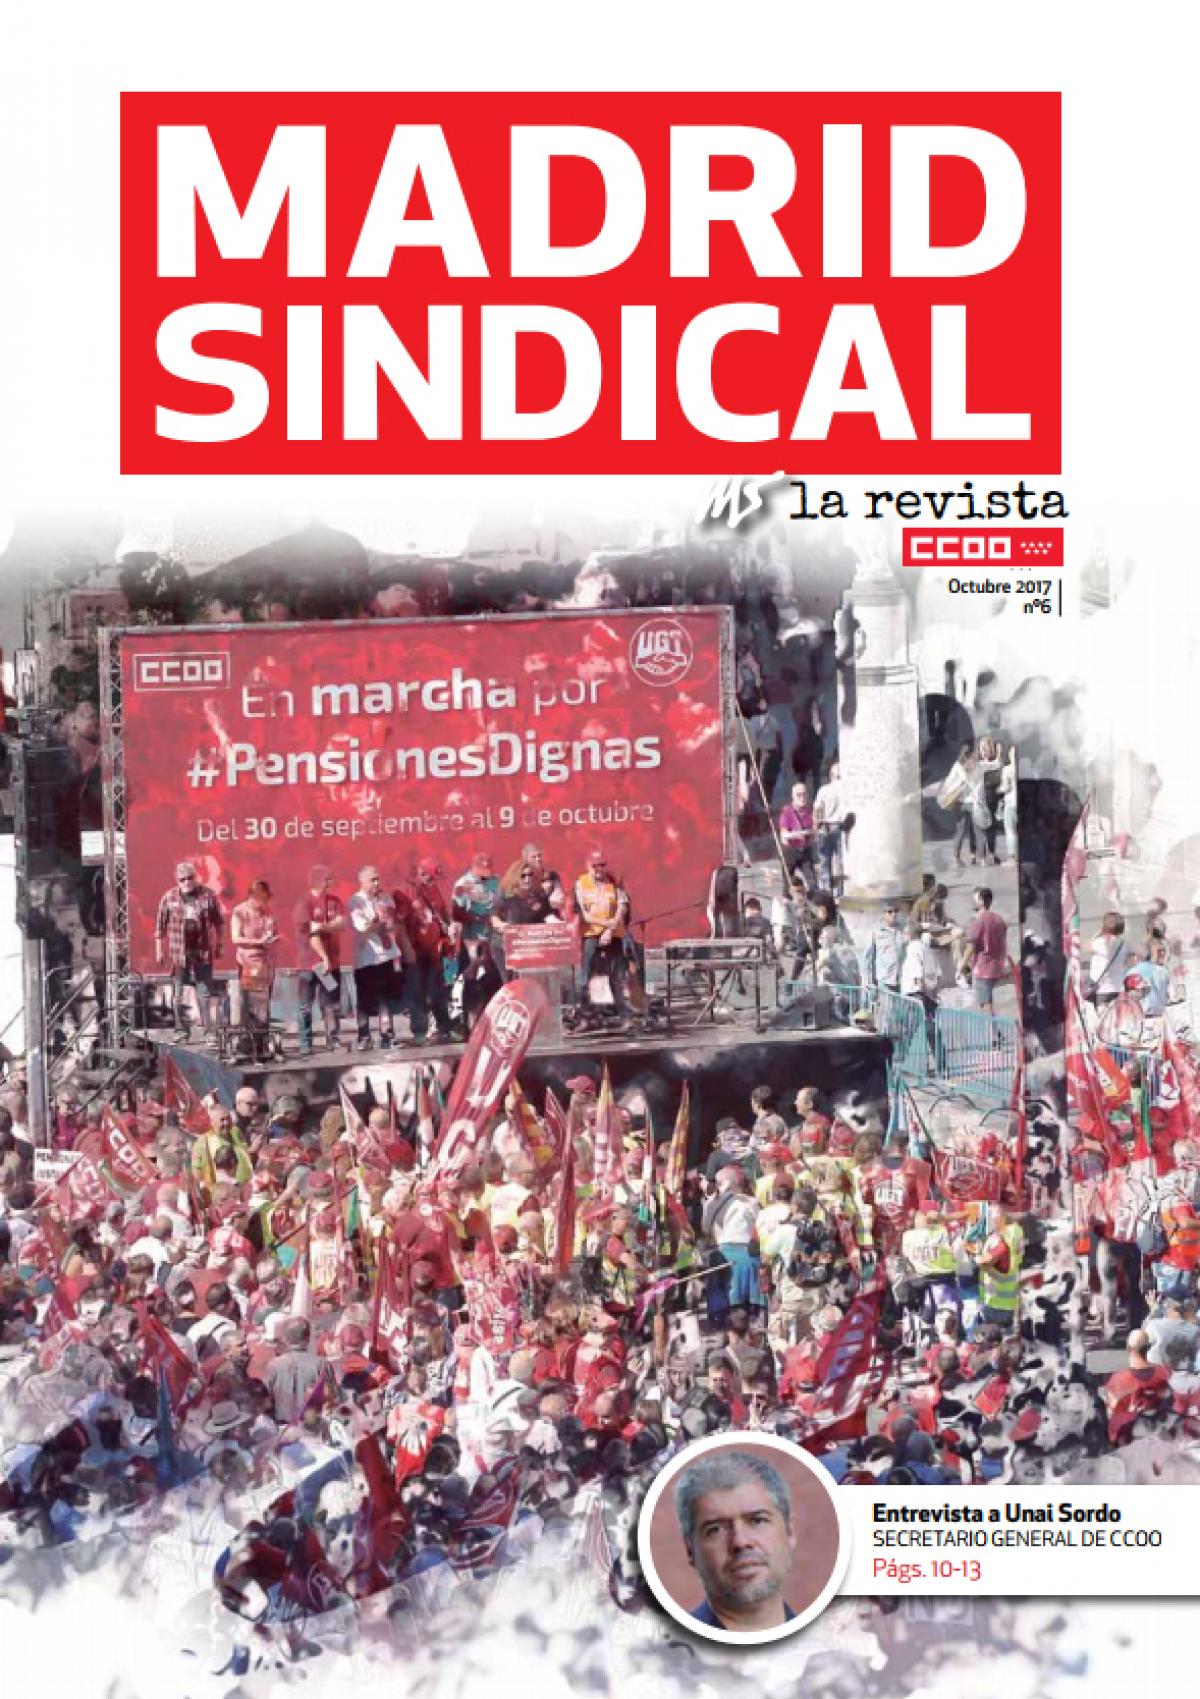 Madrid Sindical la Revista n6 octubre 2017